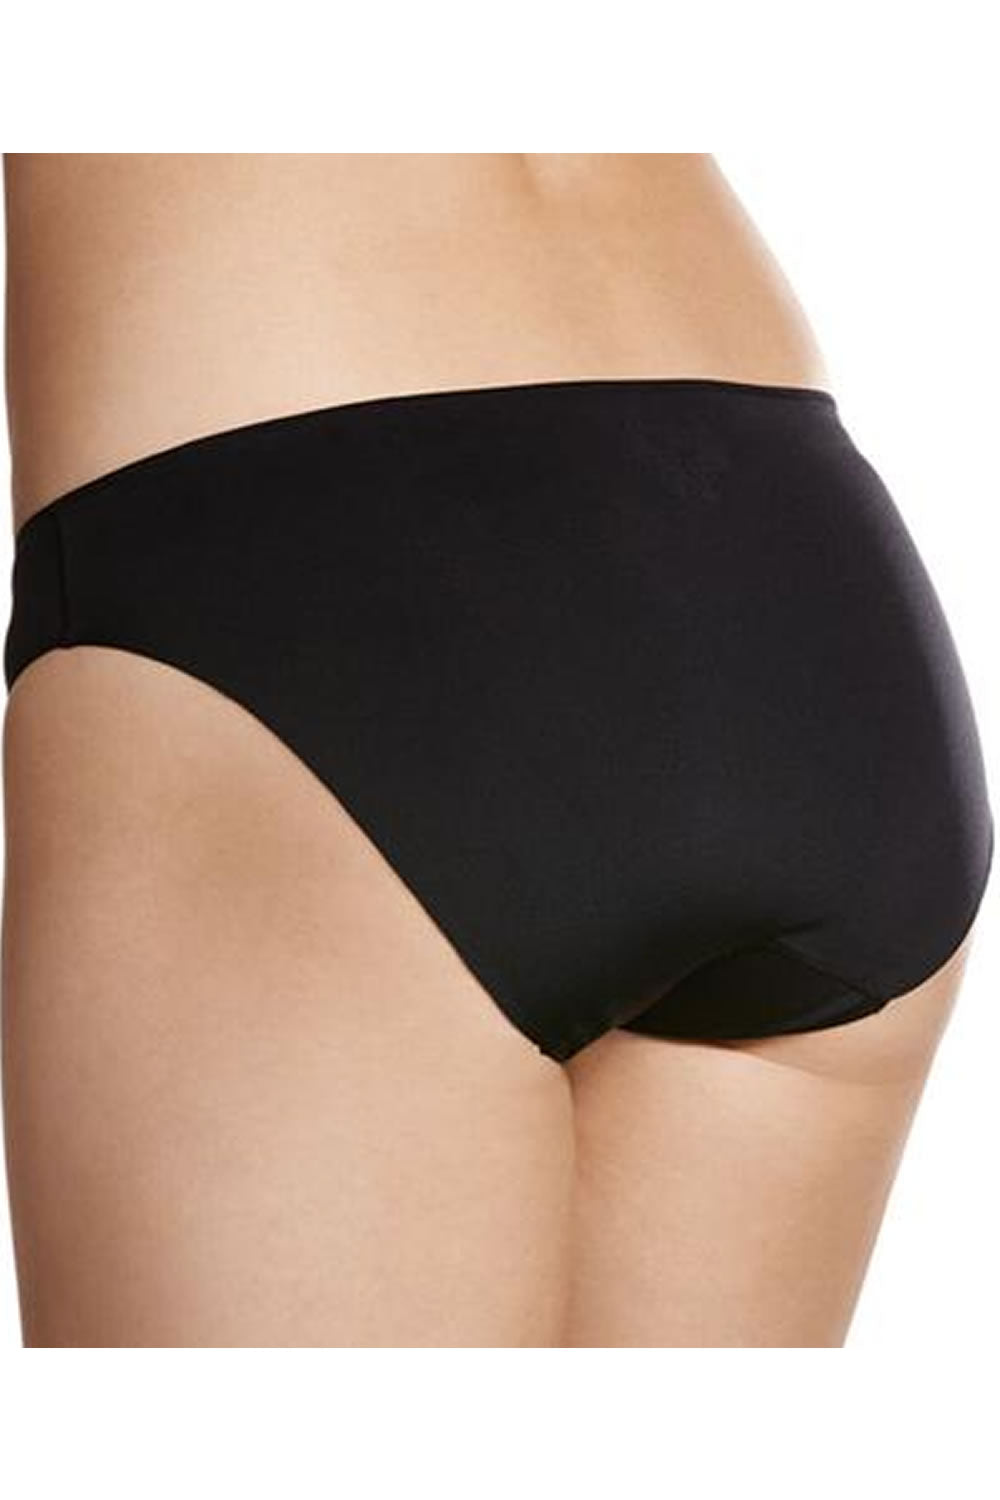 JOCKEY Women's Underwear No Panty Line Promise Next Gen Hi Cut